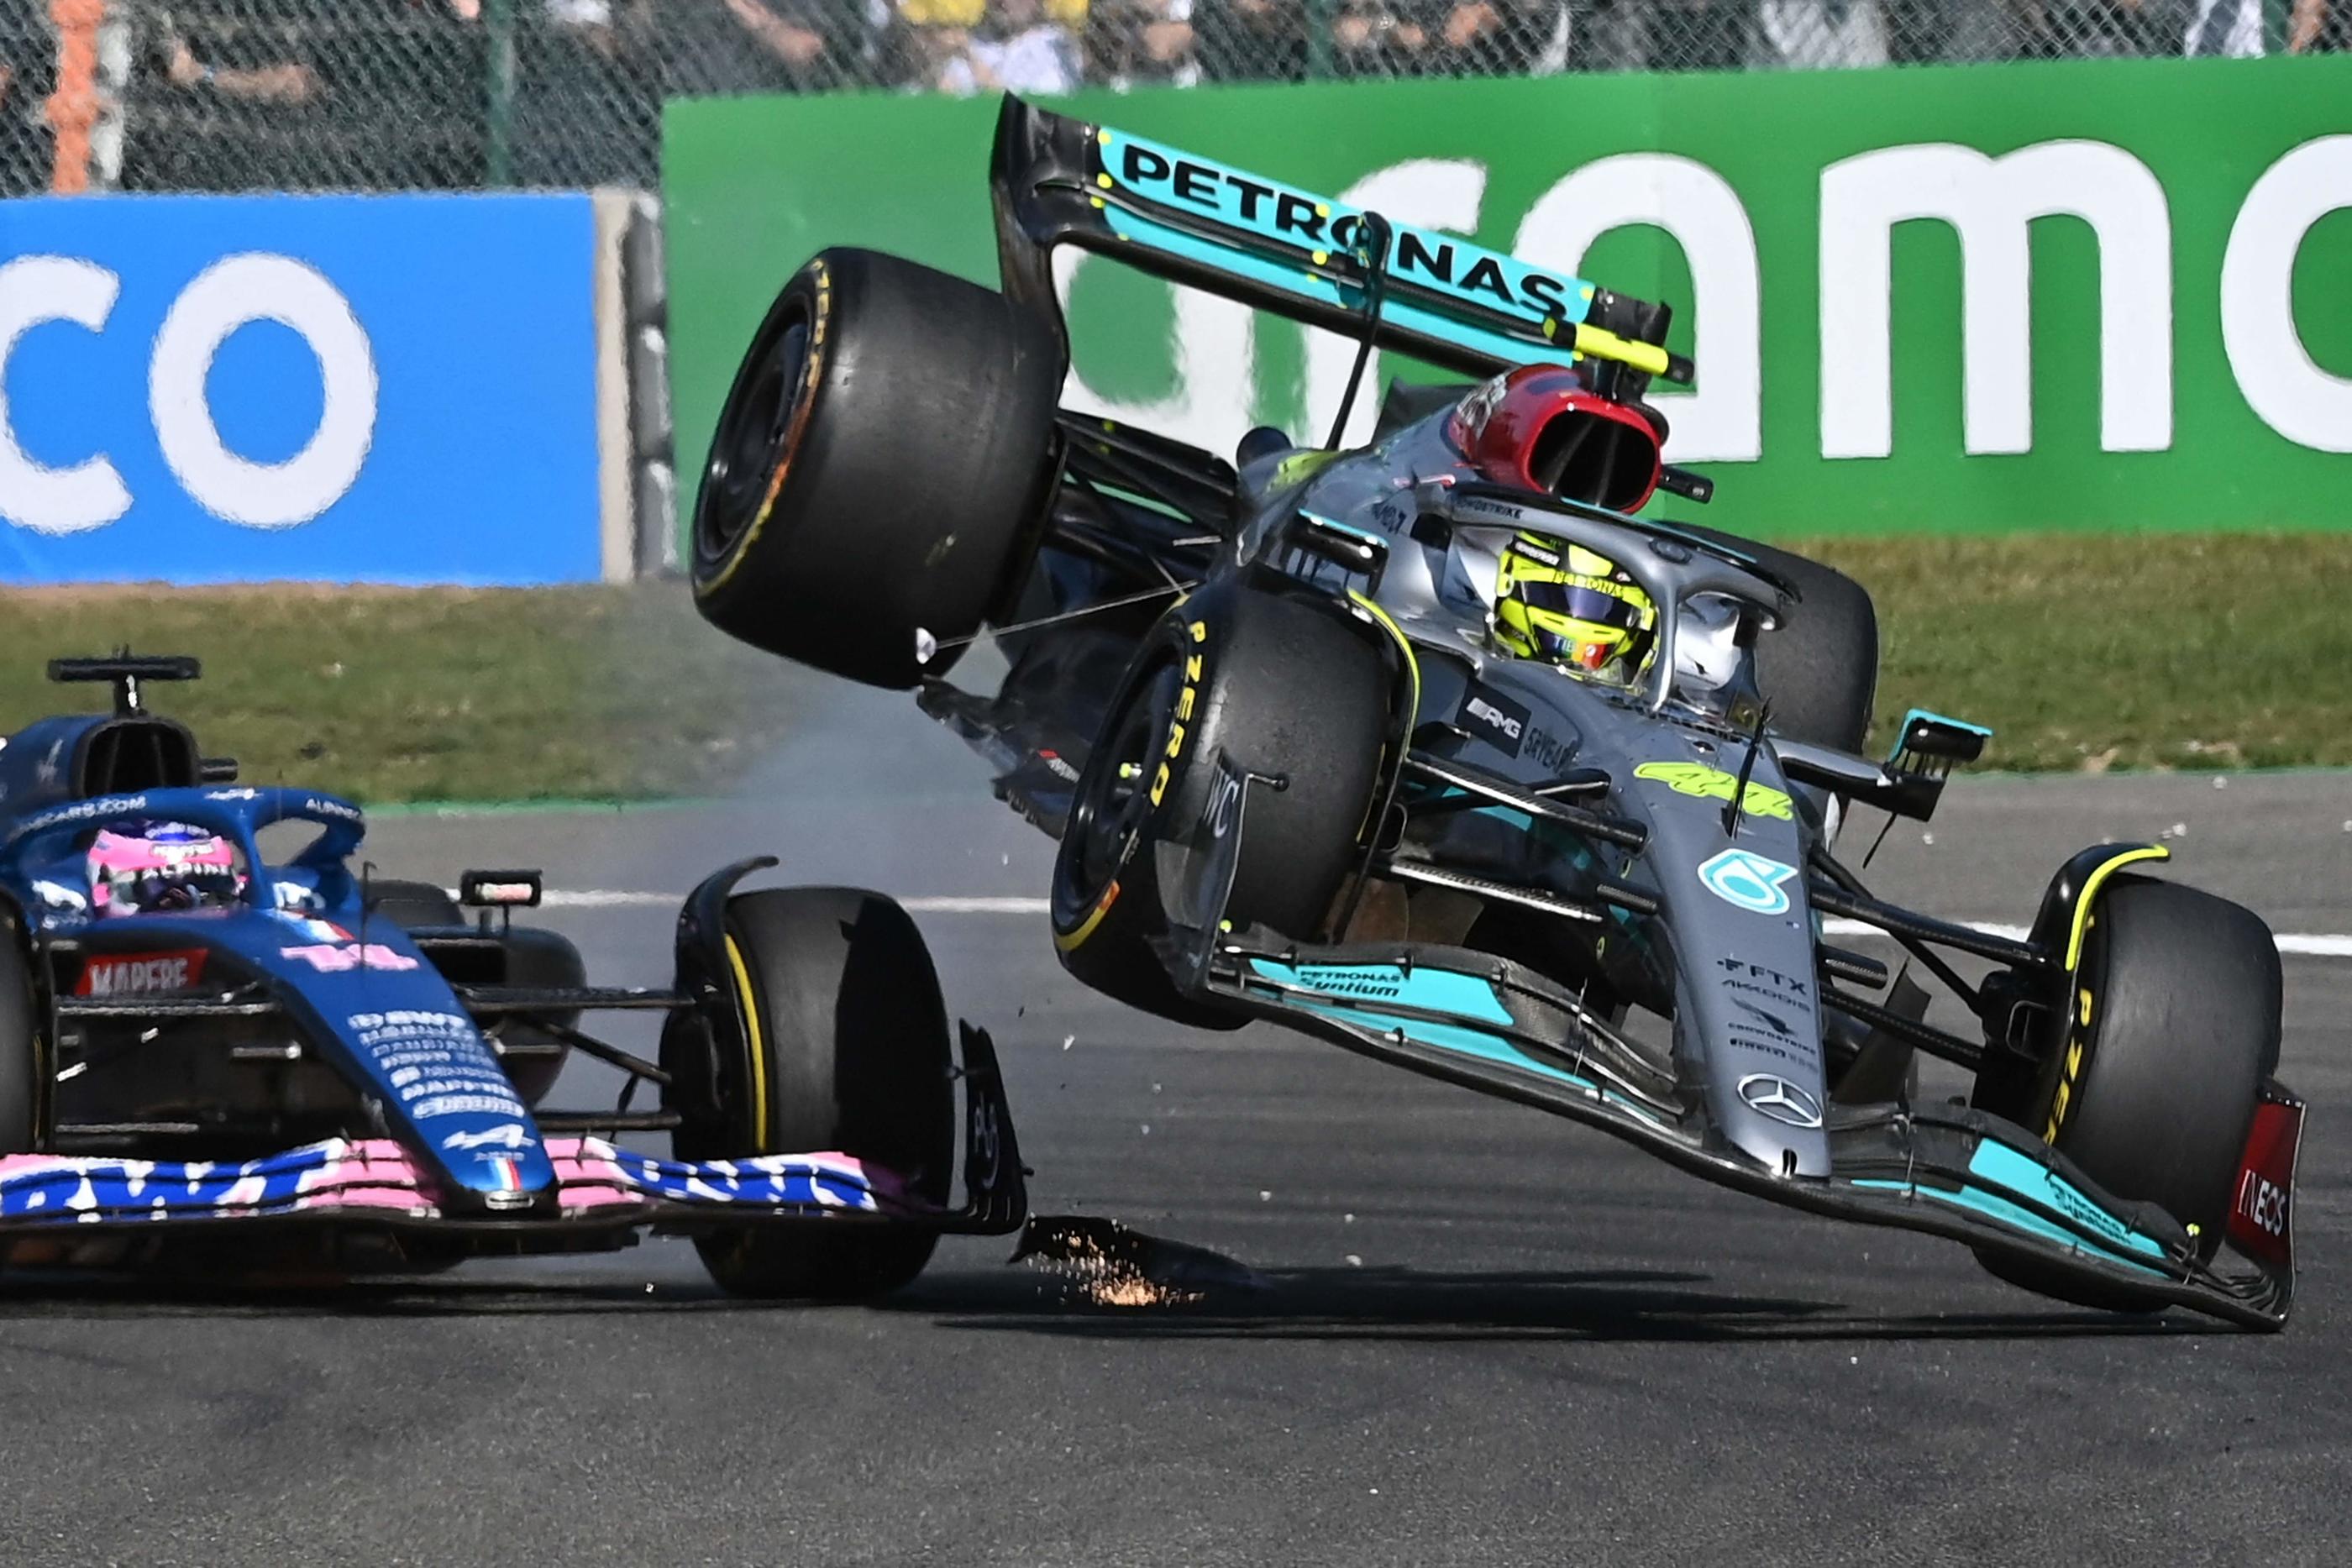 Les bolides de  Lewis Hamilton (à droite) et Fernando Alonso se percutent, ce qui va provoquer la colère du pilote espagnol. AFP/John Thys